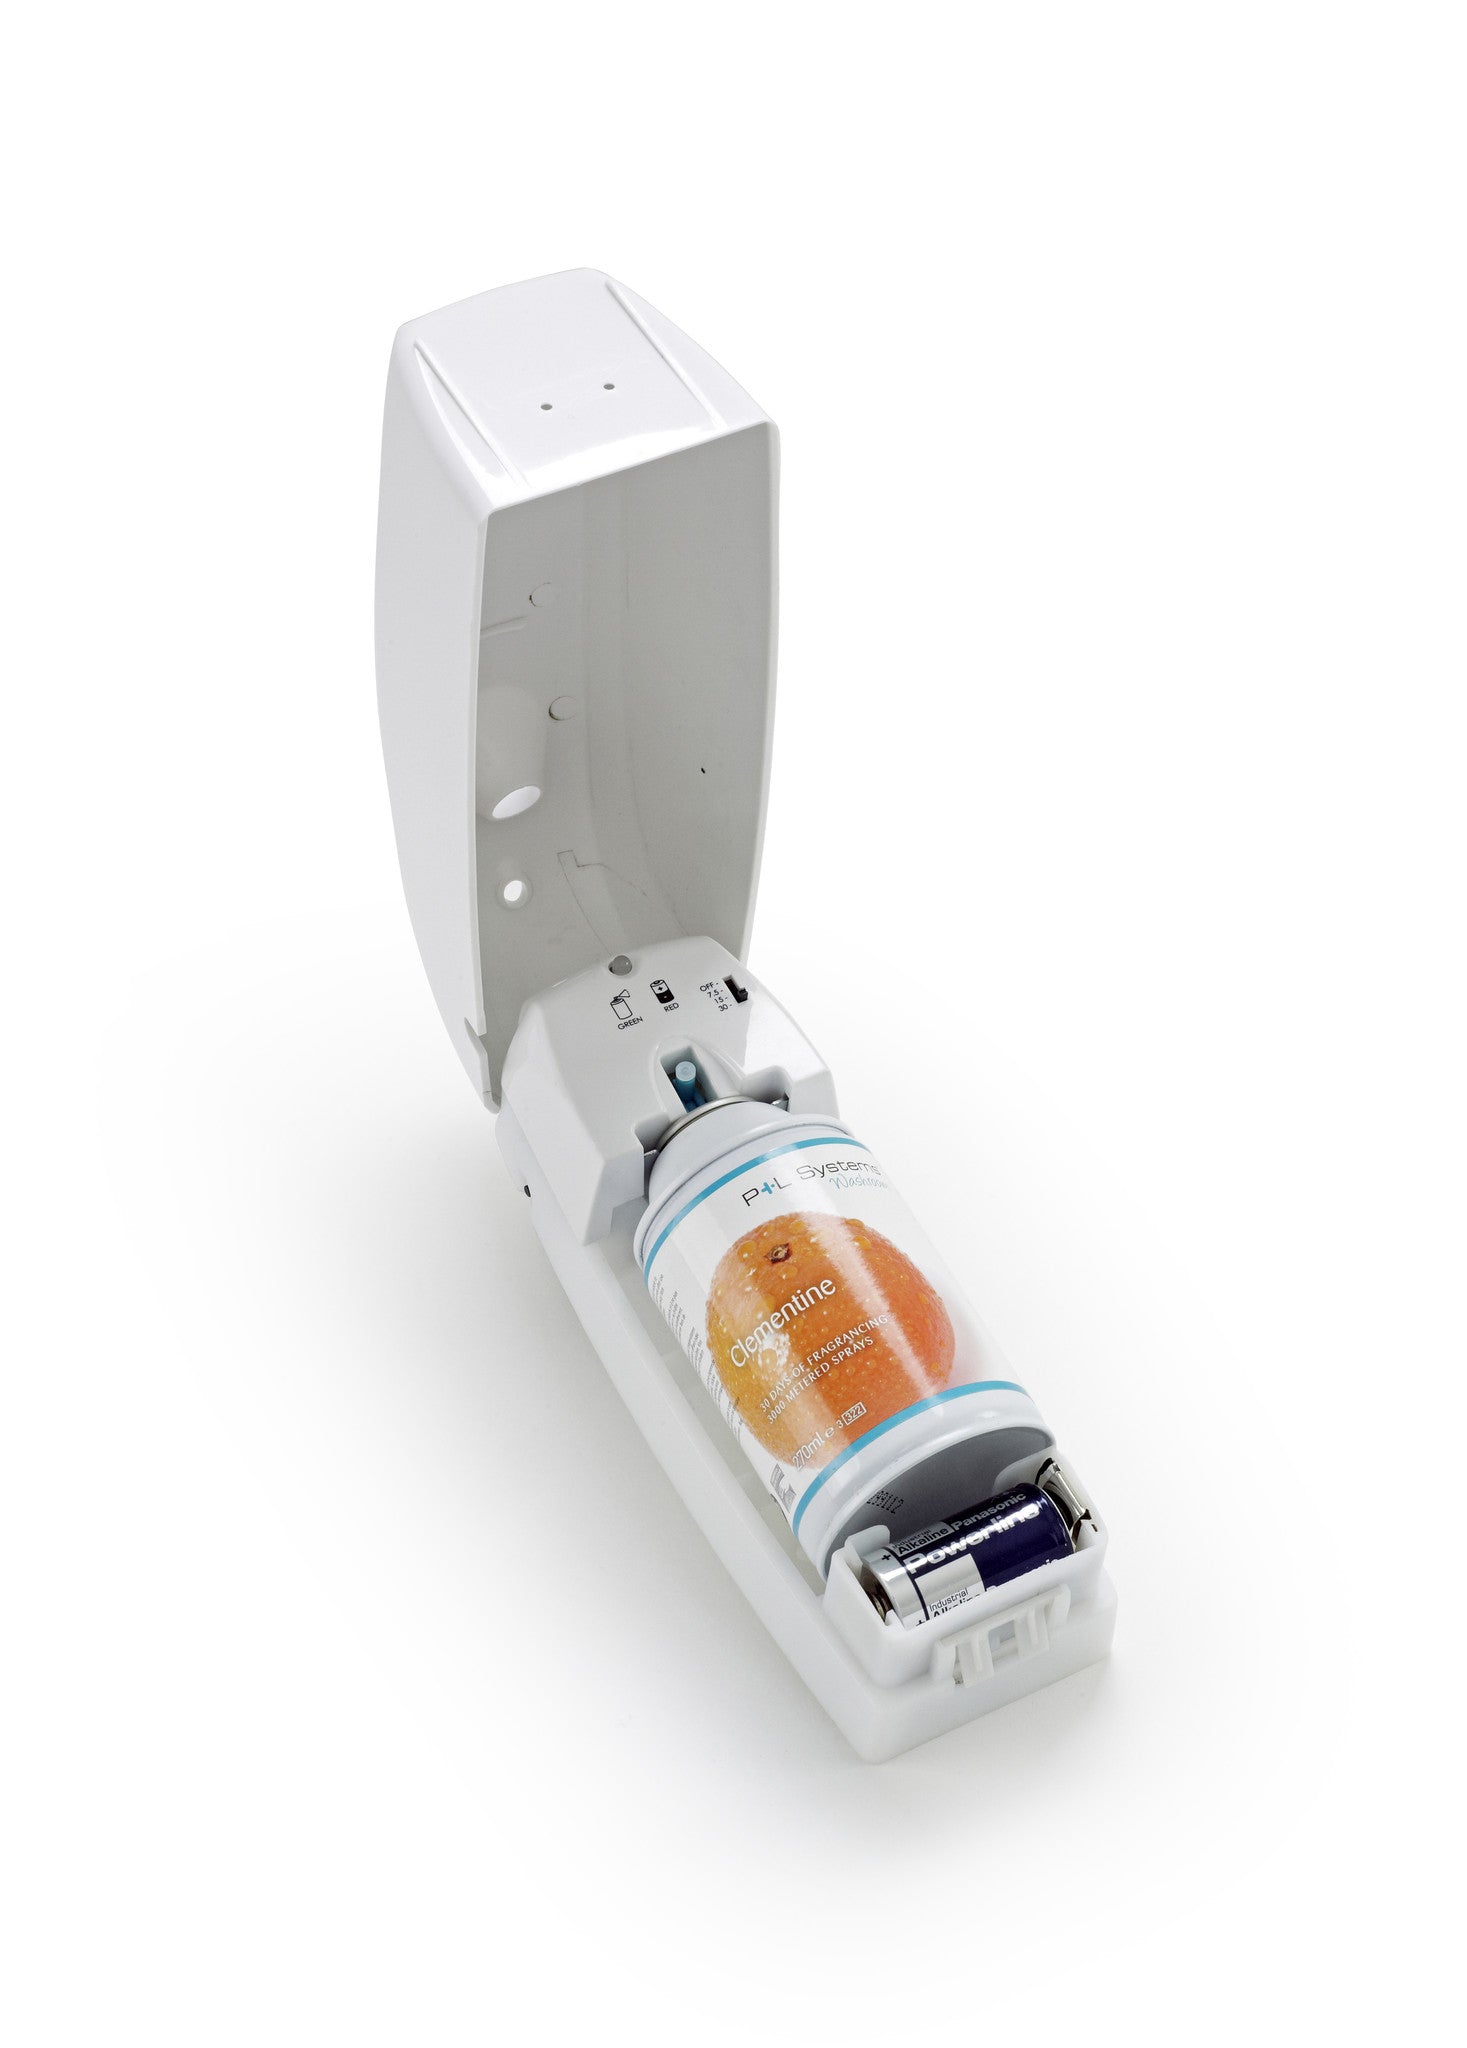 Automatic LED Air Freshener Dispenser 270ml - NCSONLINE - 2